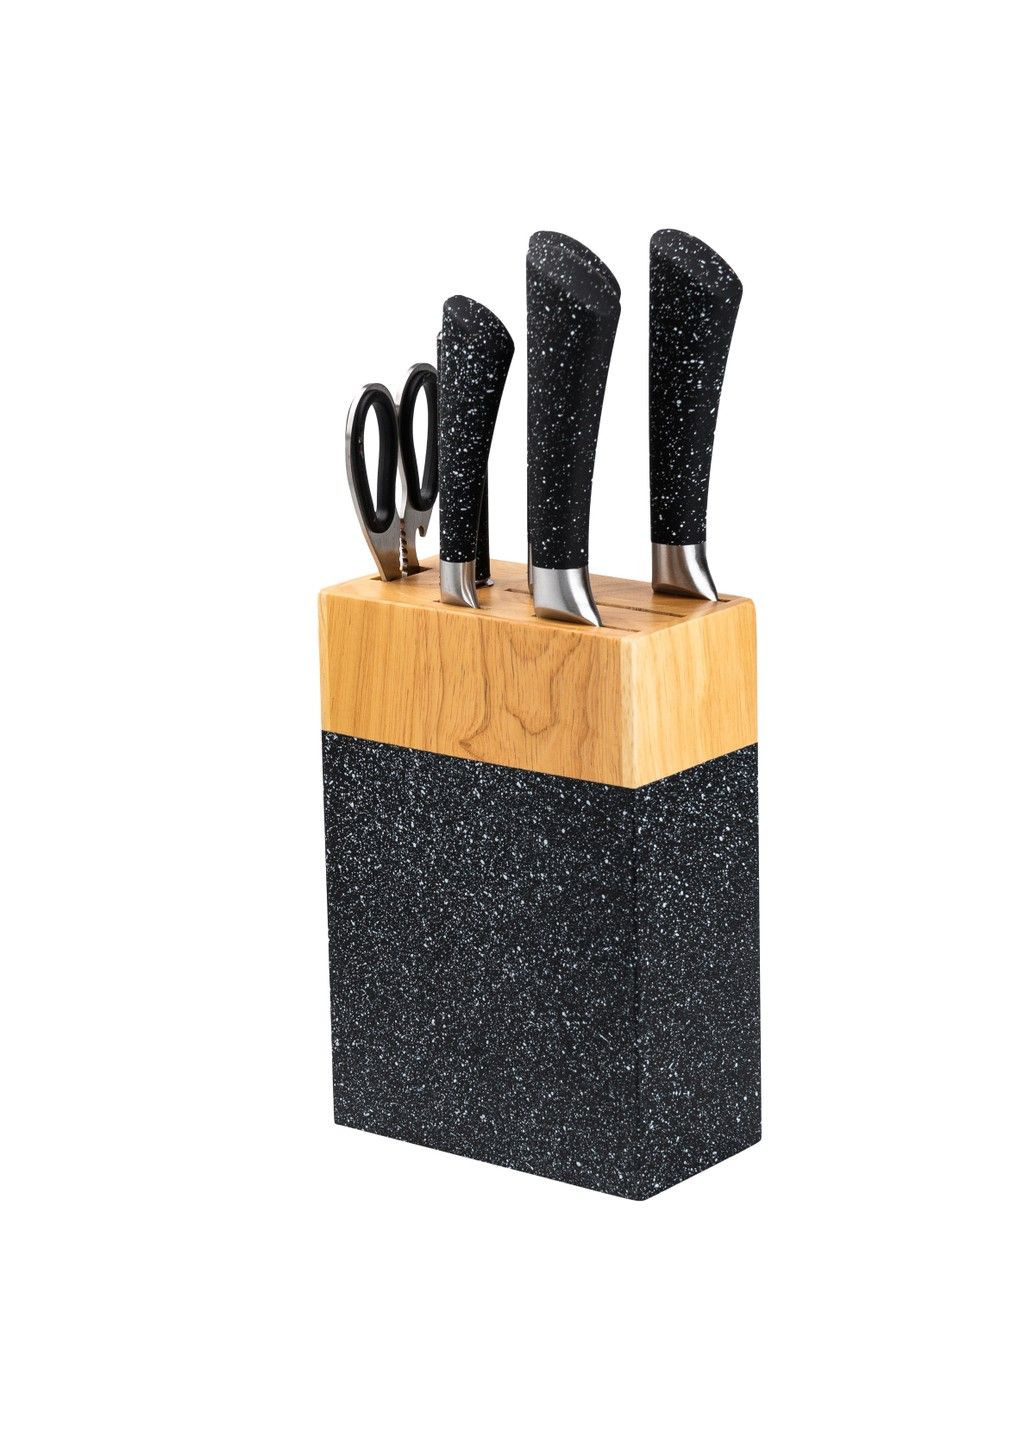 Набор кухонных ножей на подставке 8 штук, черный гранит. Without (293170793)